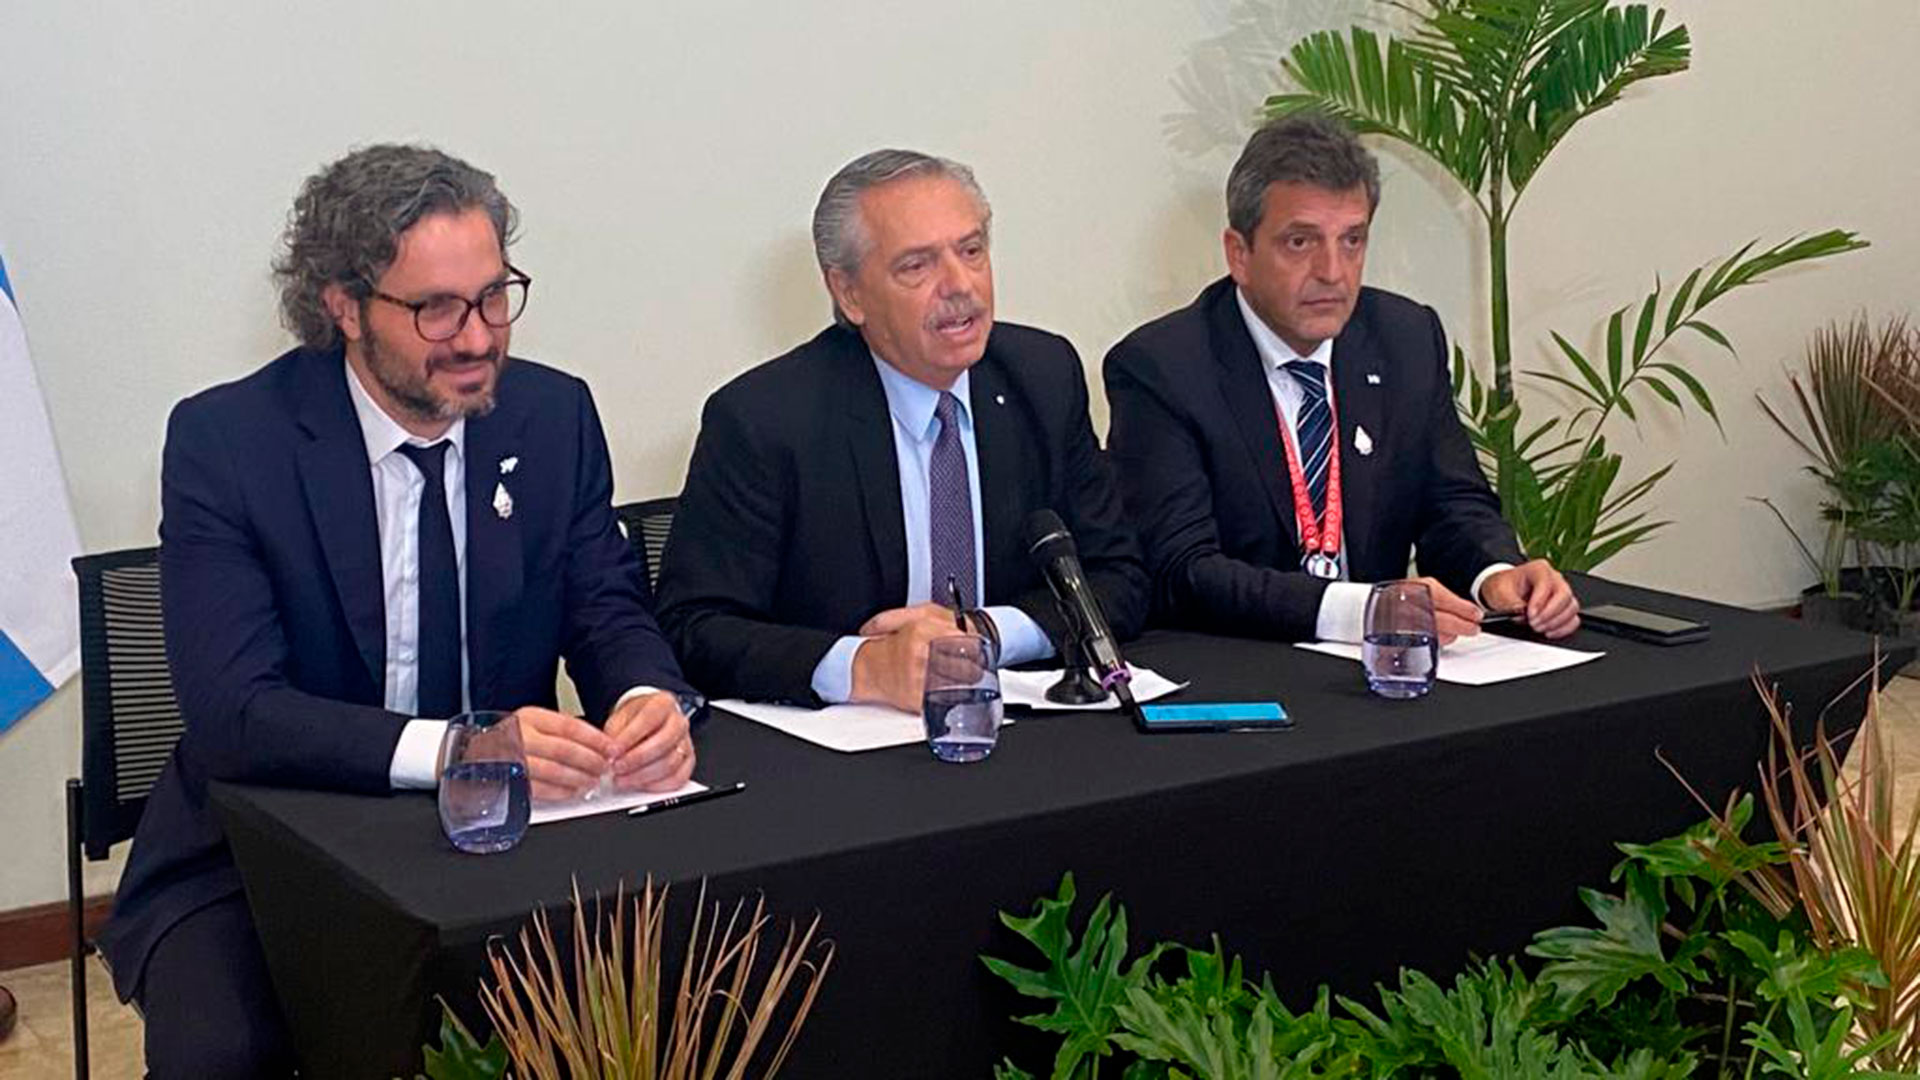 Alberto Fernández, Santiago Cafiero y Sergio Massa durante una conferencia de prensa en la Cumbre del G20 de Bali